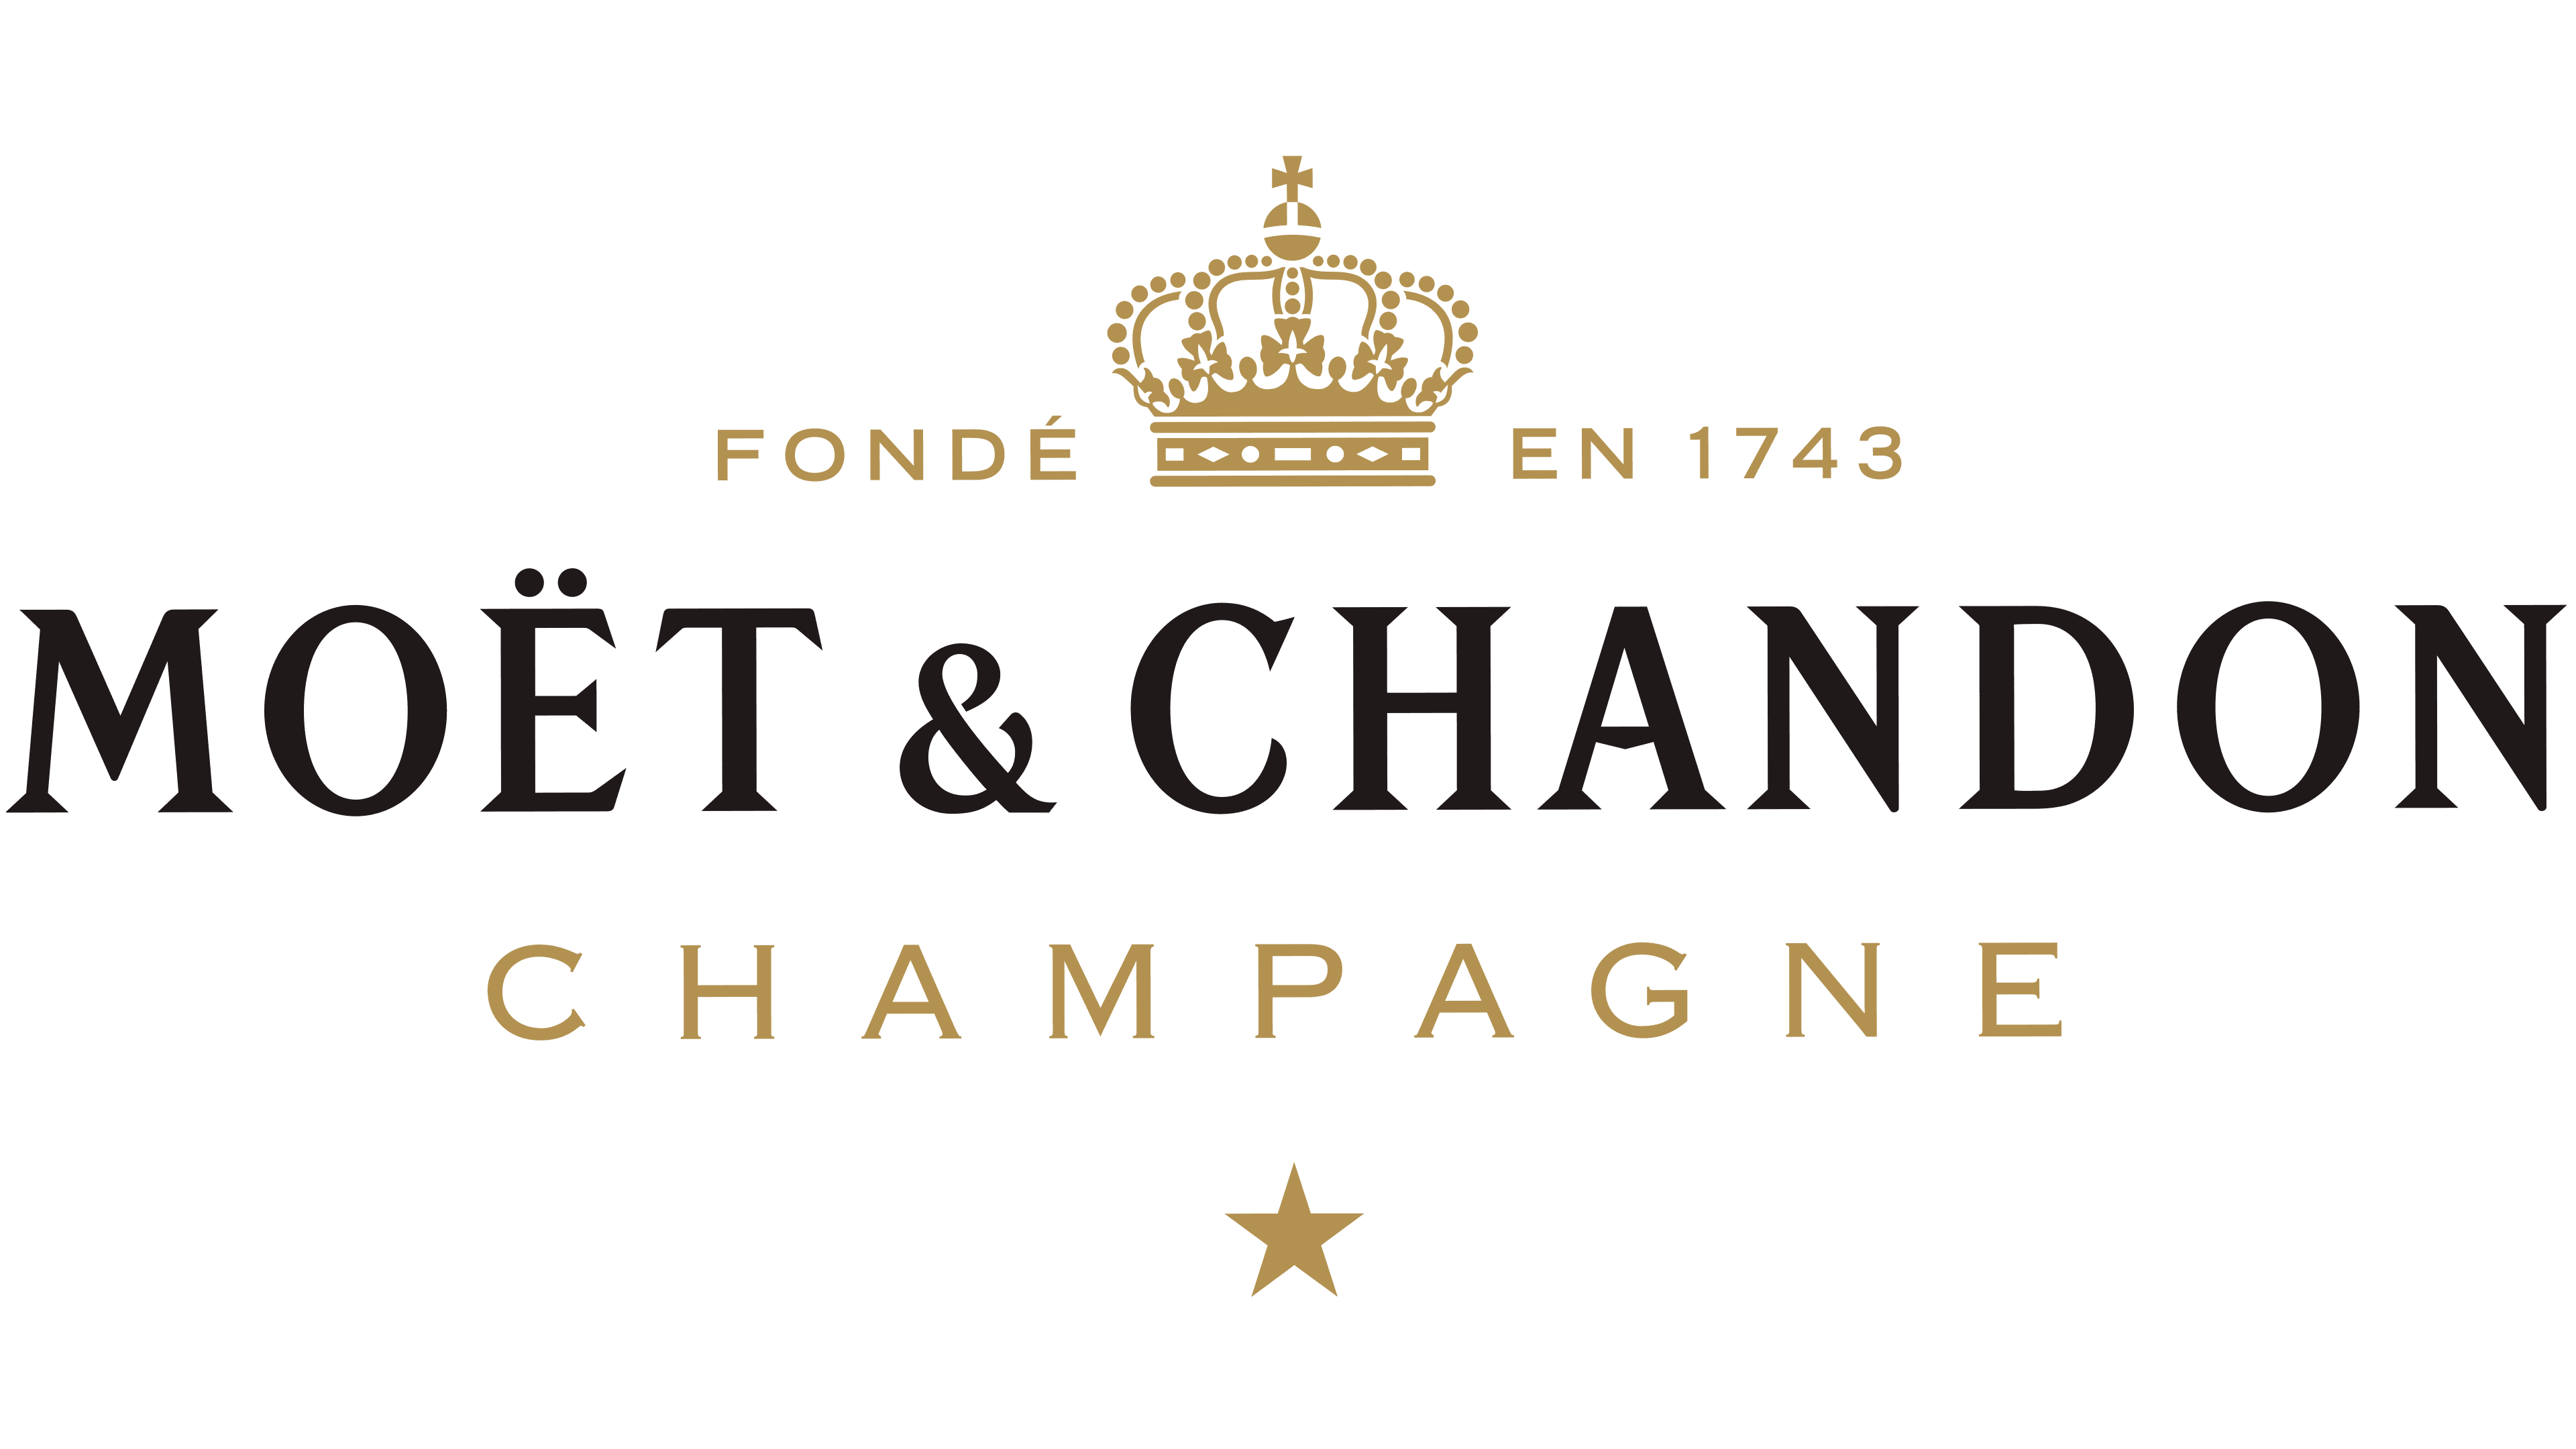 Moët & Chandon Logo